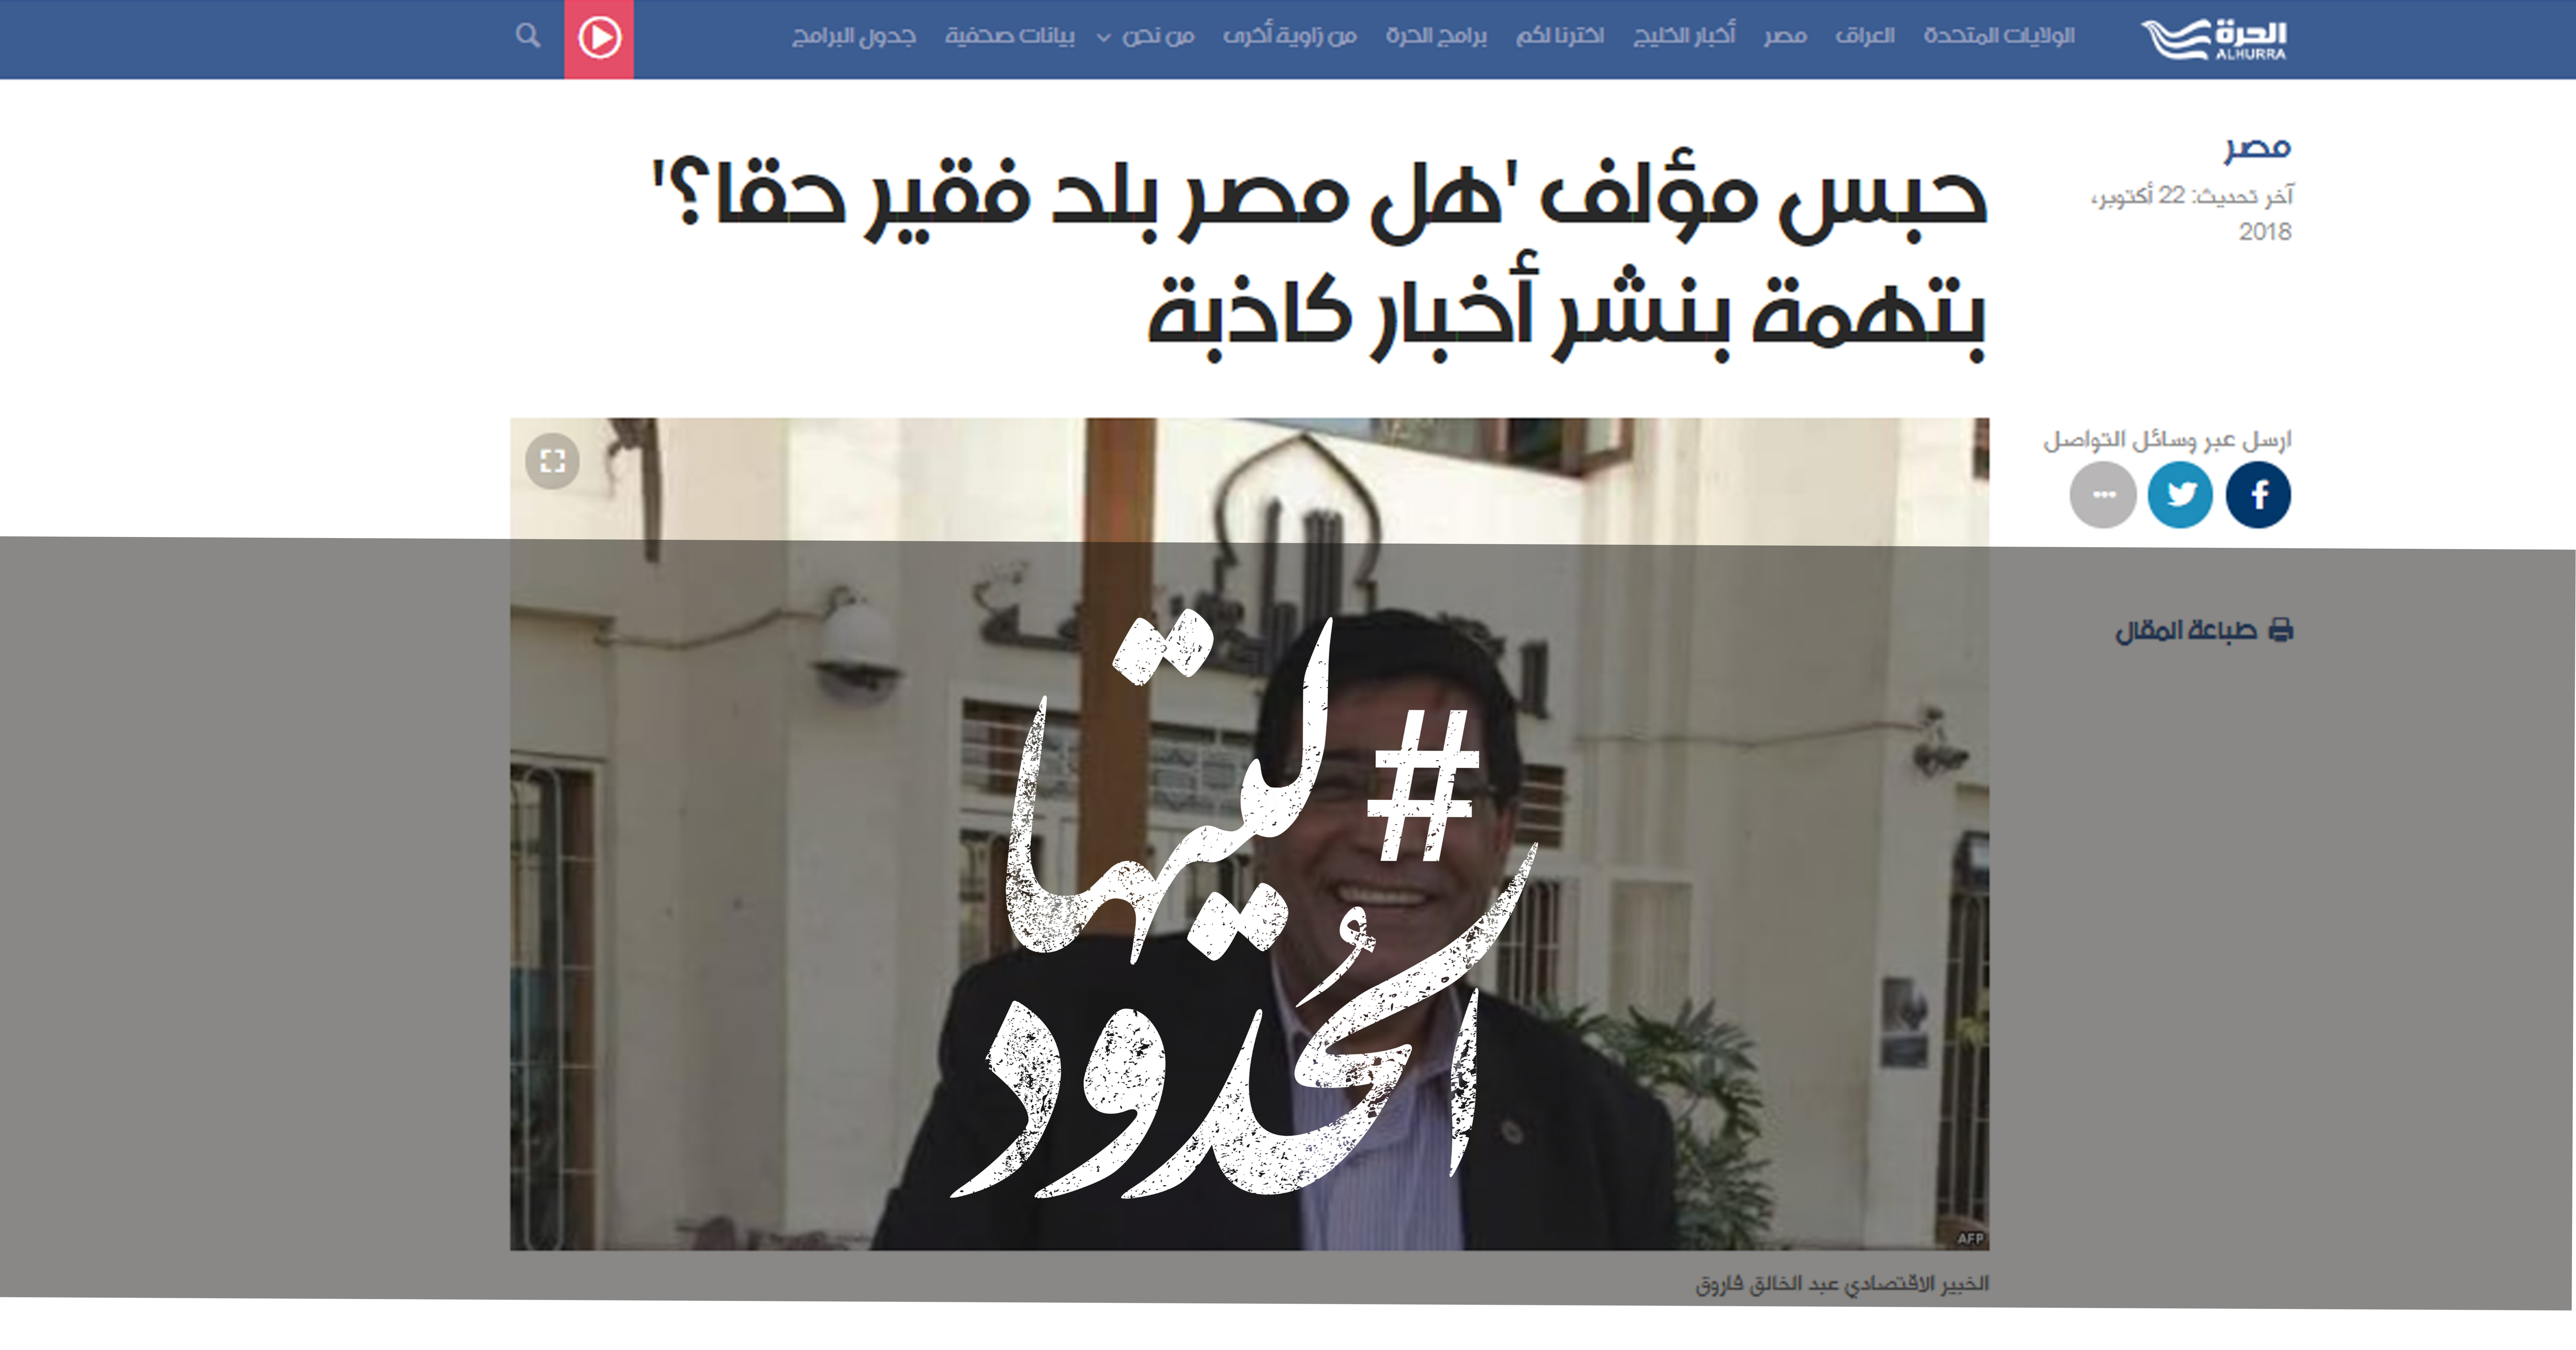 صورة حبس مؤلف ‘هل مصر بلد فقير حقا؟’ بتهمة بنشر أخبار كاذبة